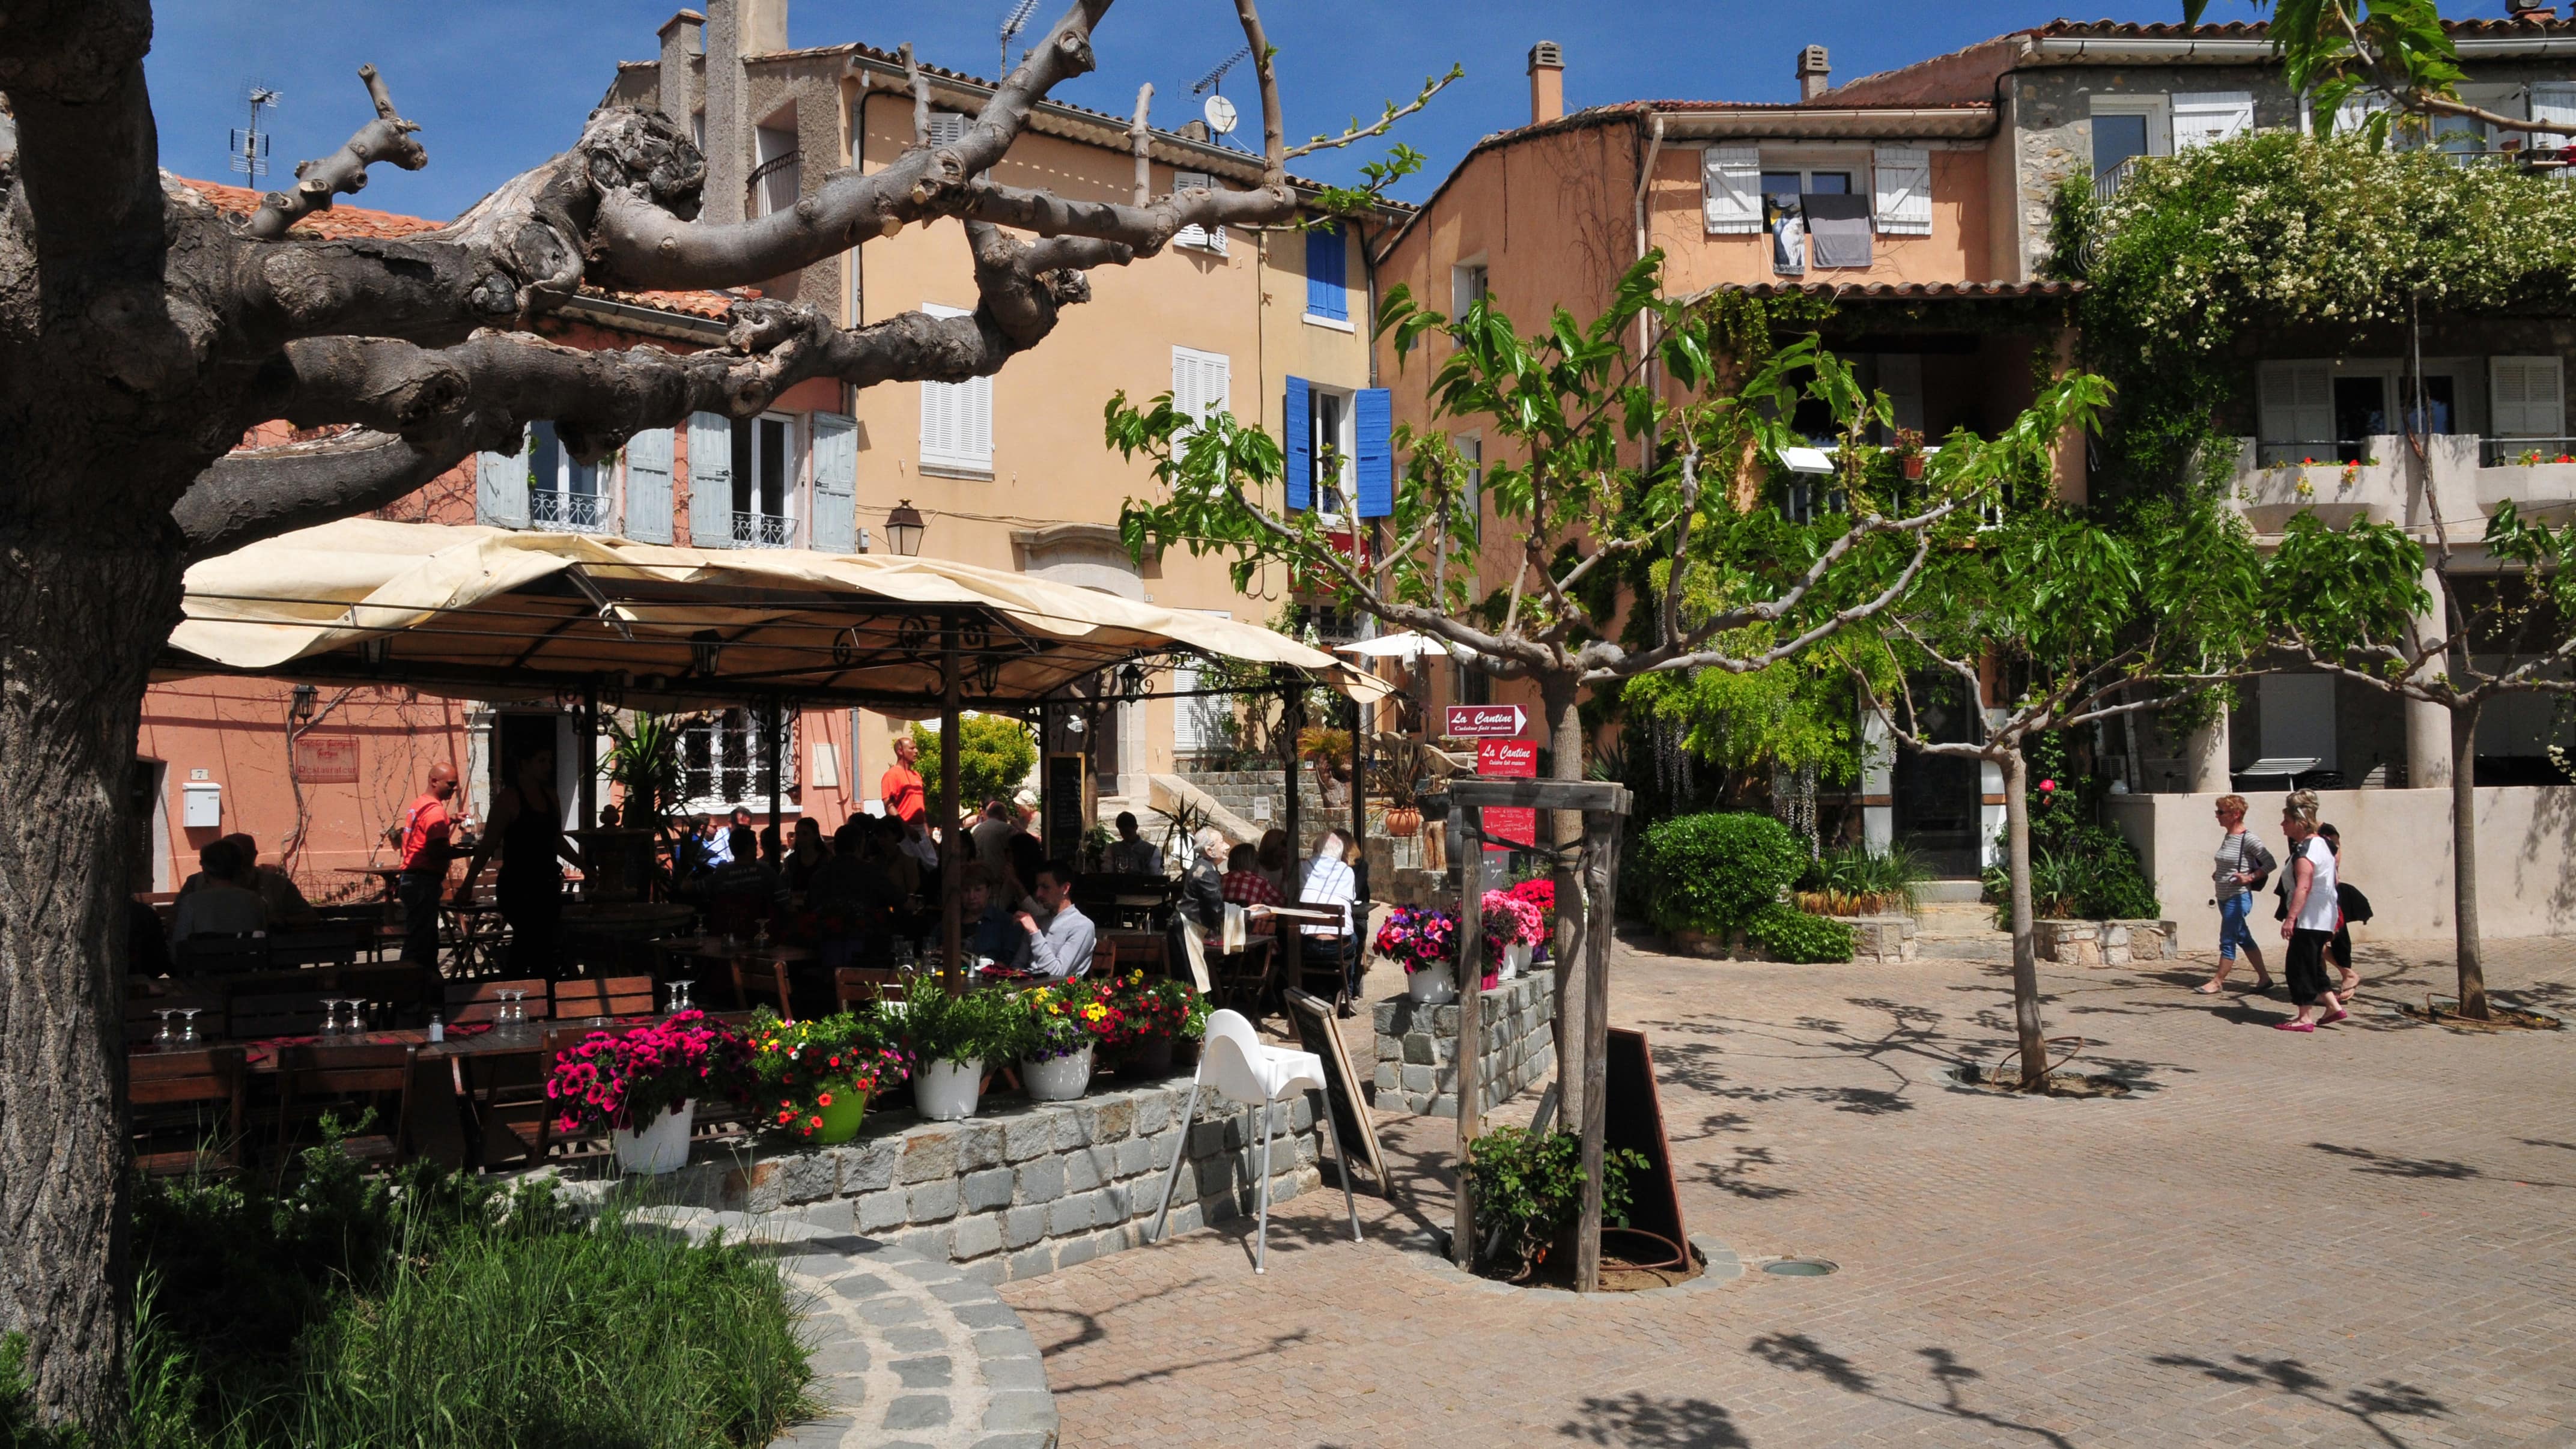 Quelques promeneurs sur une place et des personnes attablées sur la terrasse ombragée d’un restaurant au Castellet dans le Var